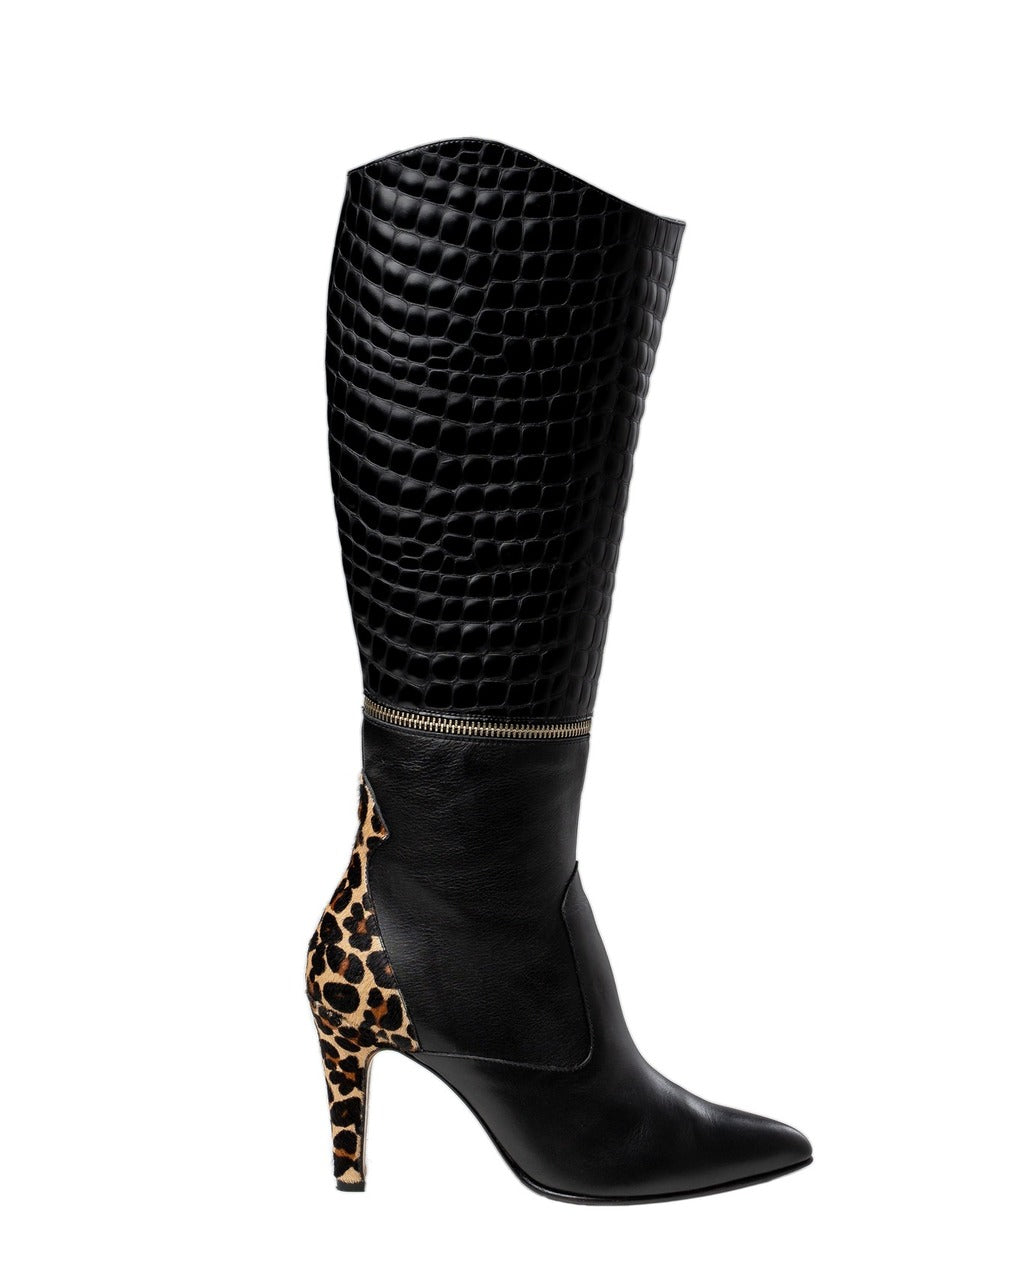 Botas de tacón cómodo con caña arrugada de color leopardo mujer